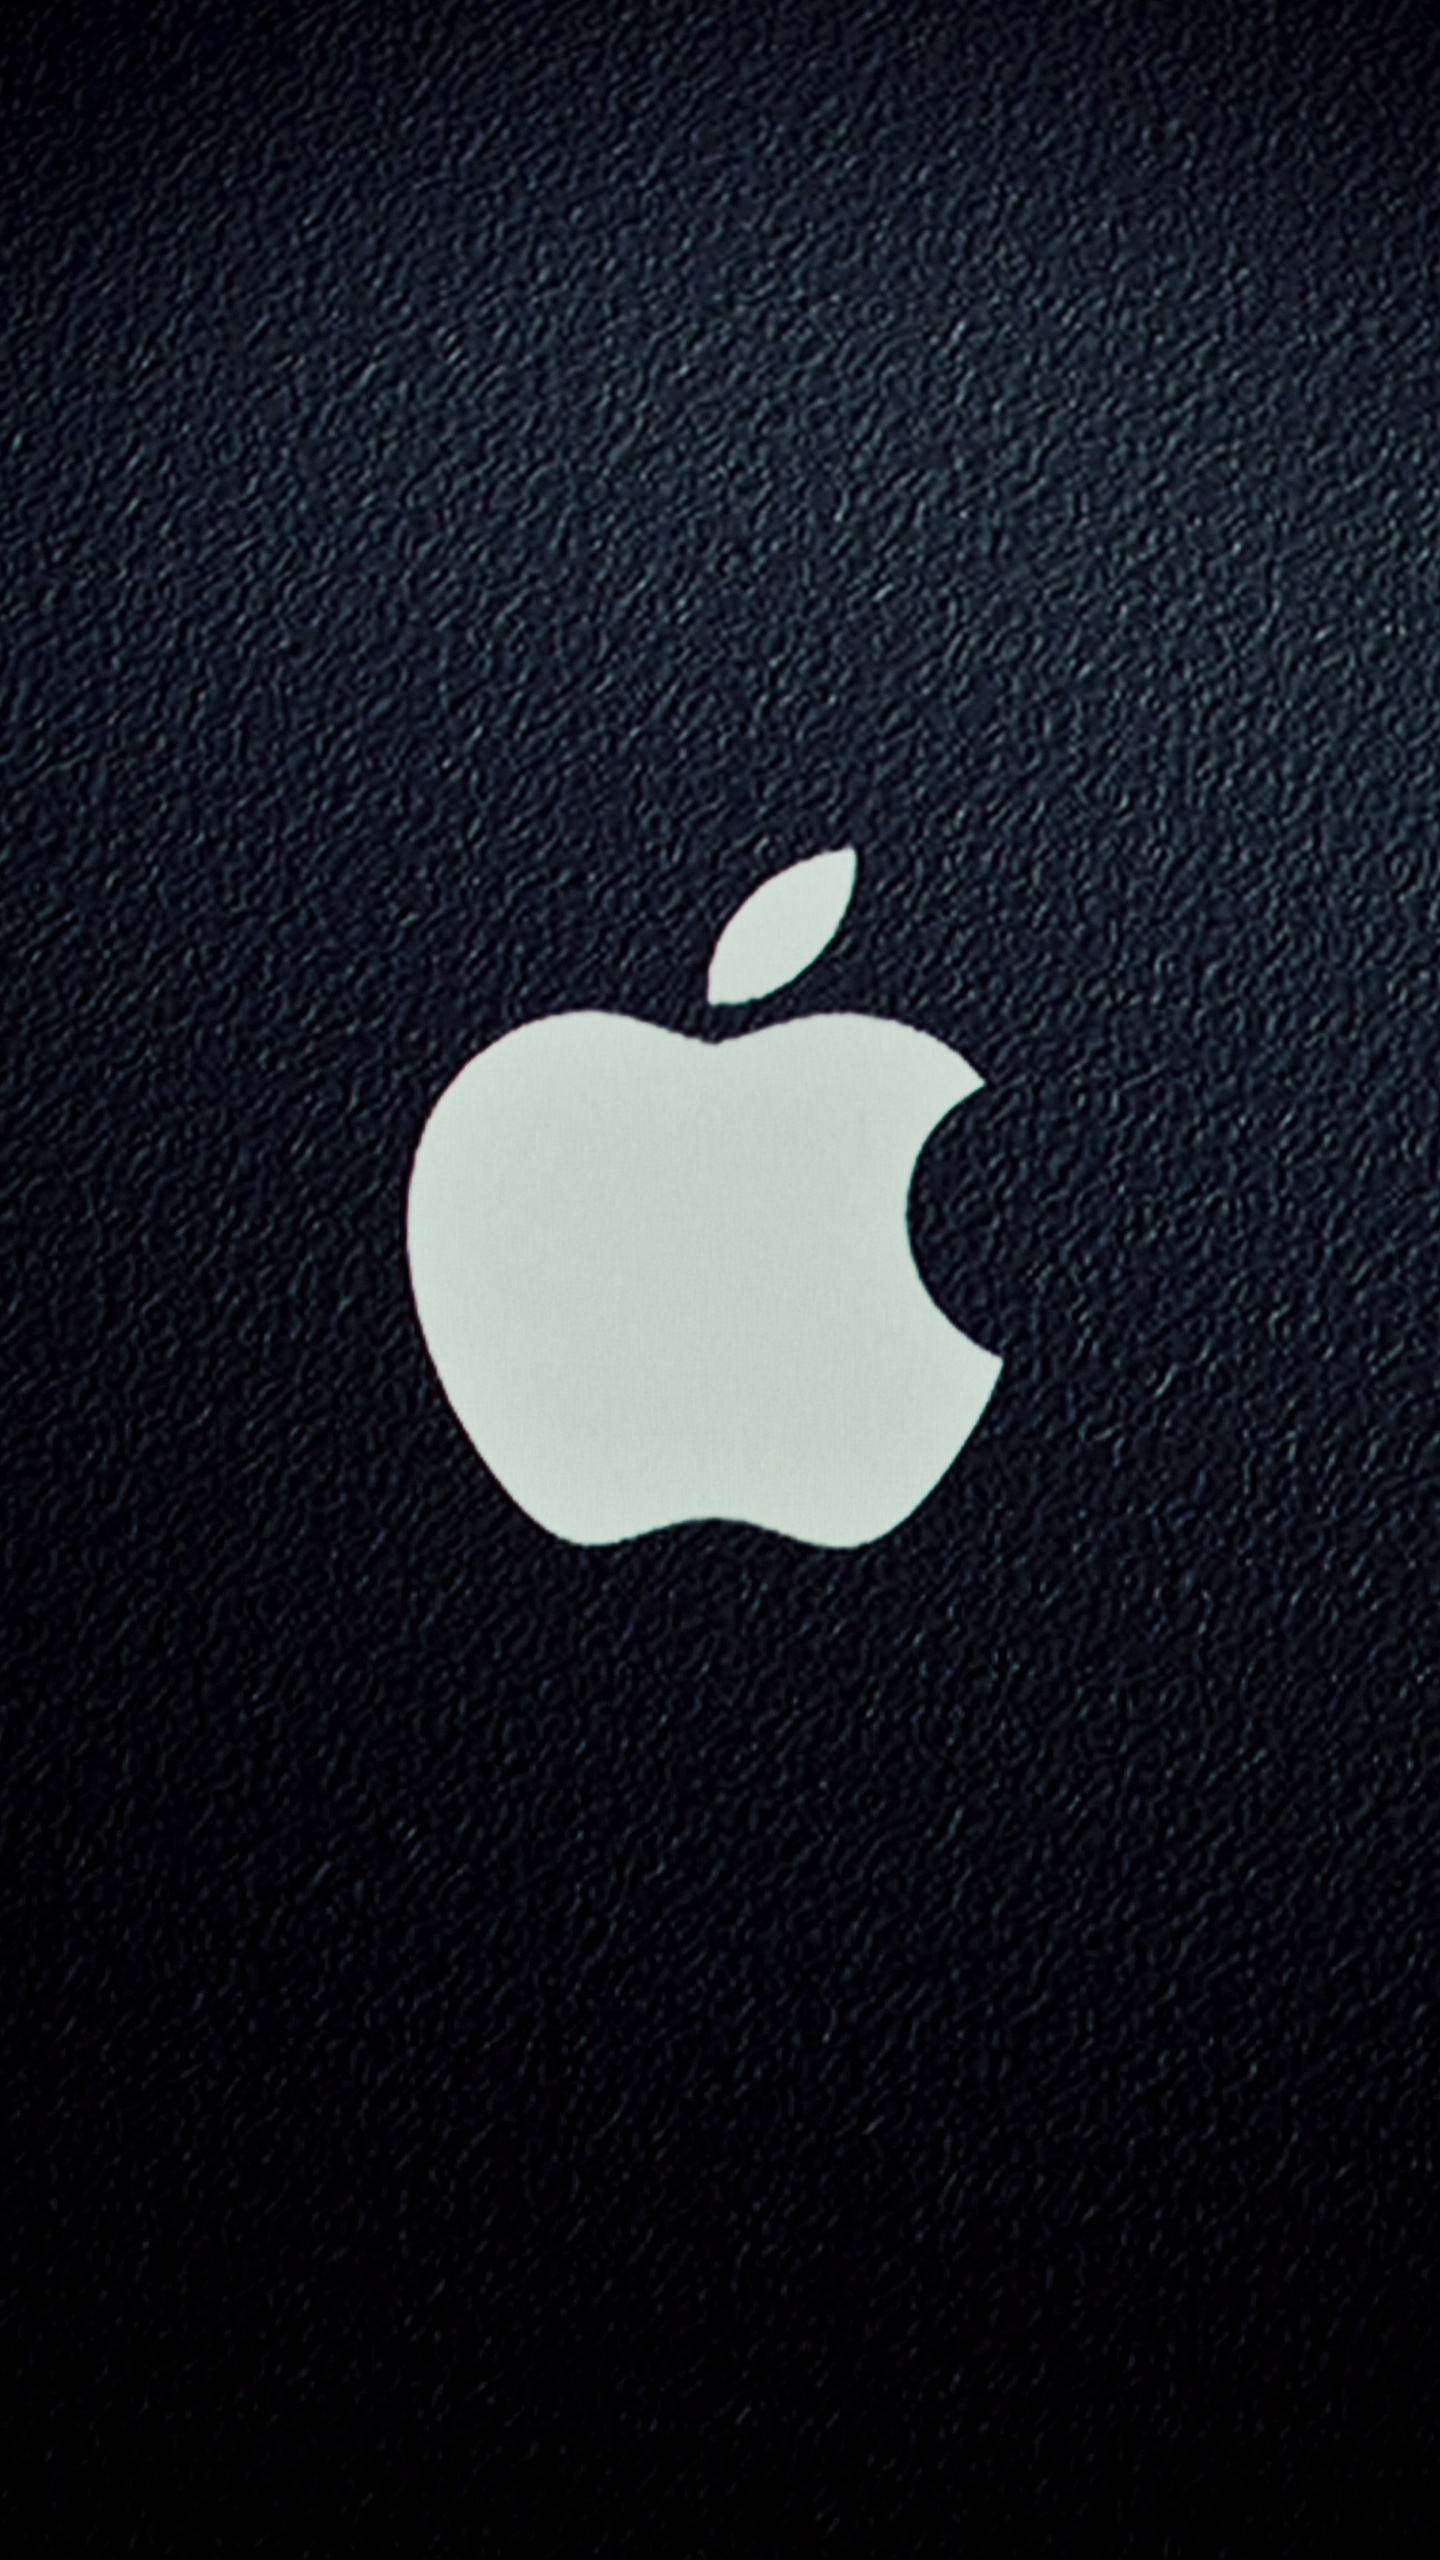 Найти картинку айфона. Логотип Apple. Заставка на айфон оригинальная. Стильные обои на телефон. Яблоко айфон.